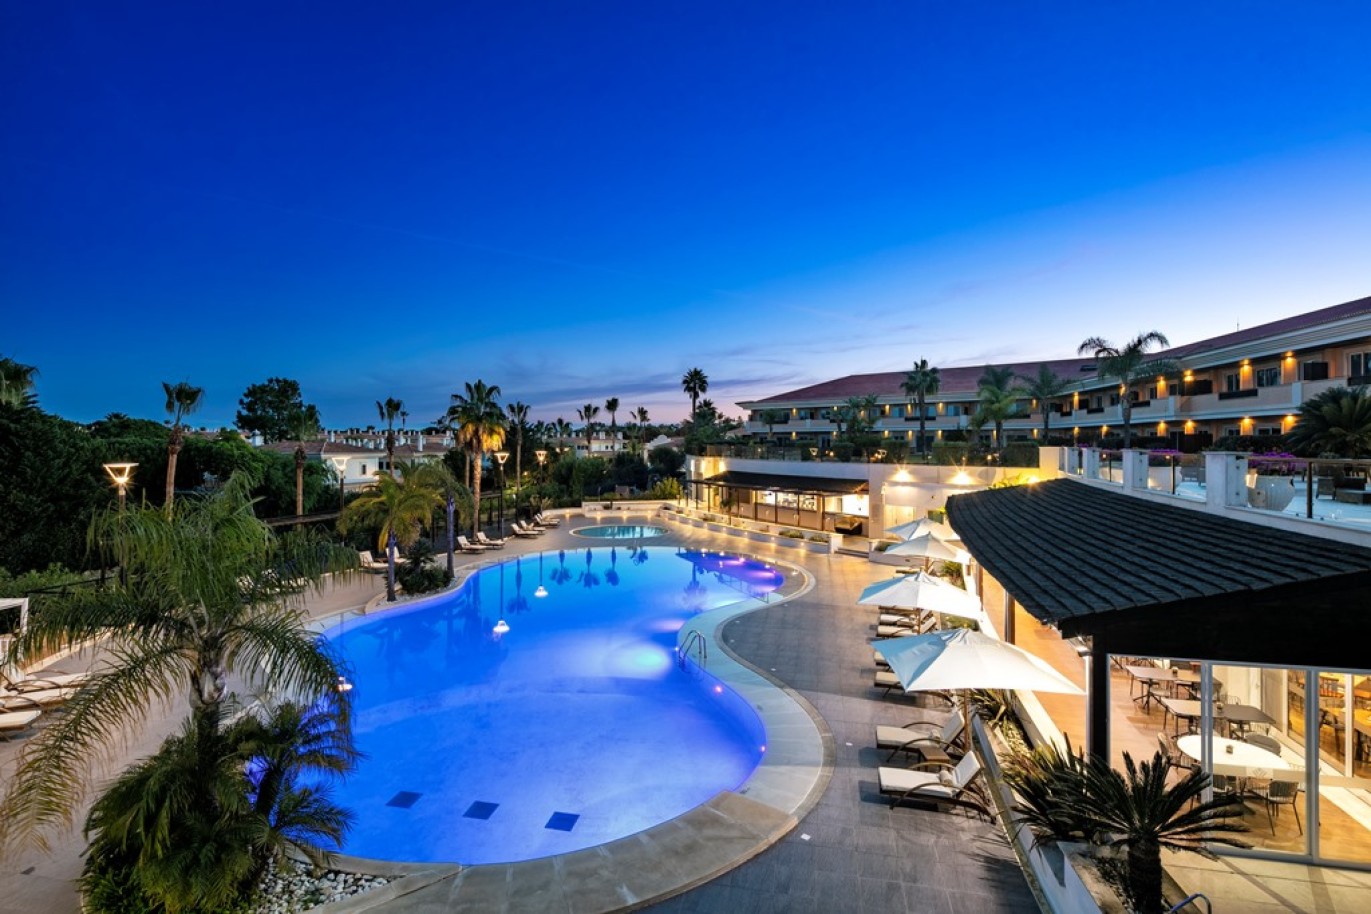 Apartamento, 2 quartos, piscina, para venda na Quinta do Lago, Algarve_263461